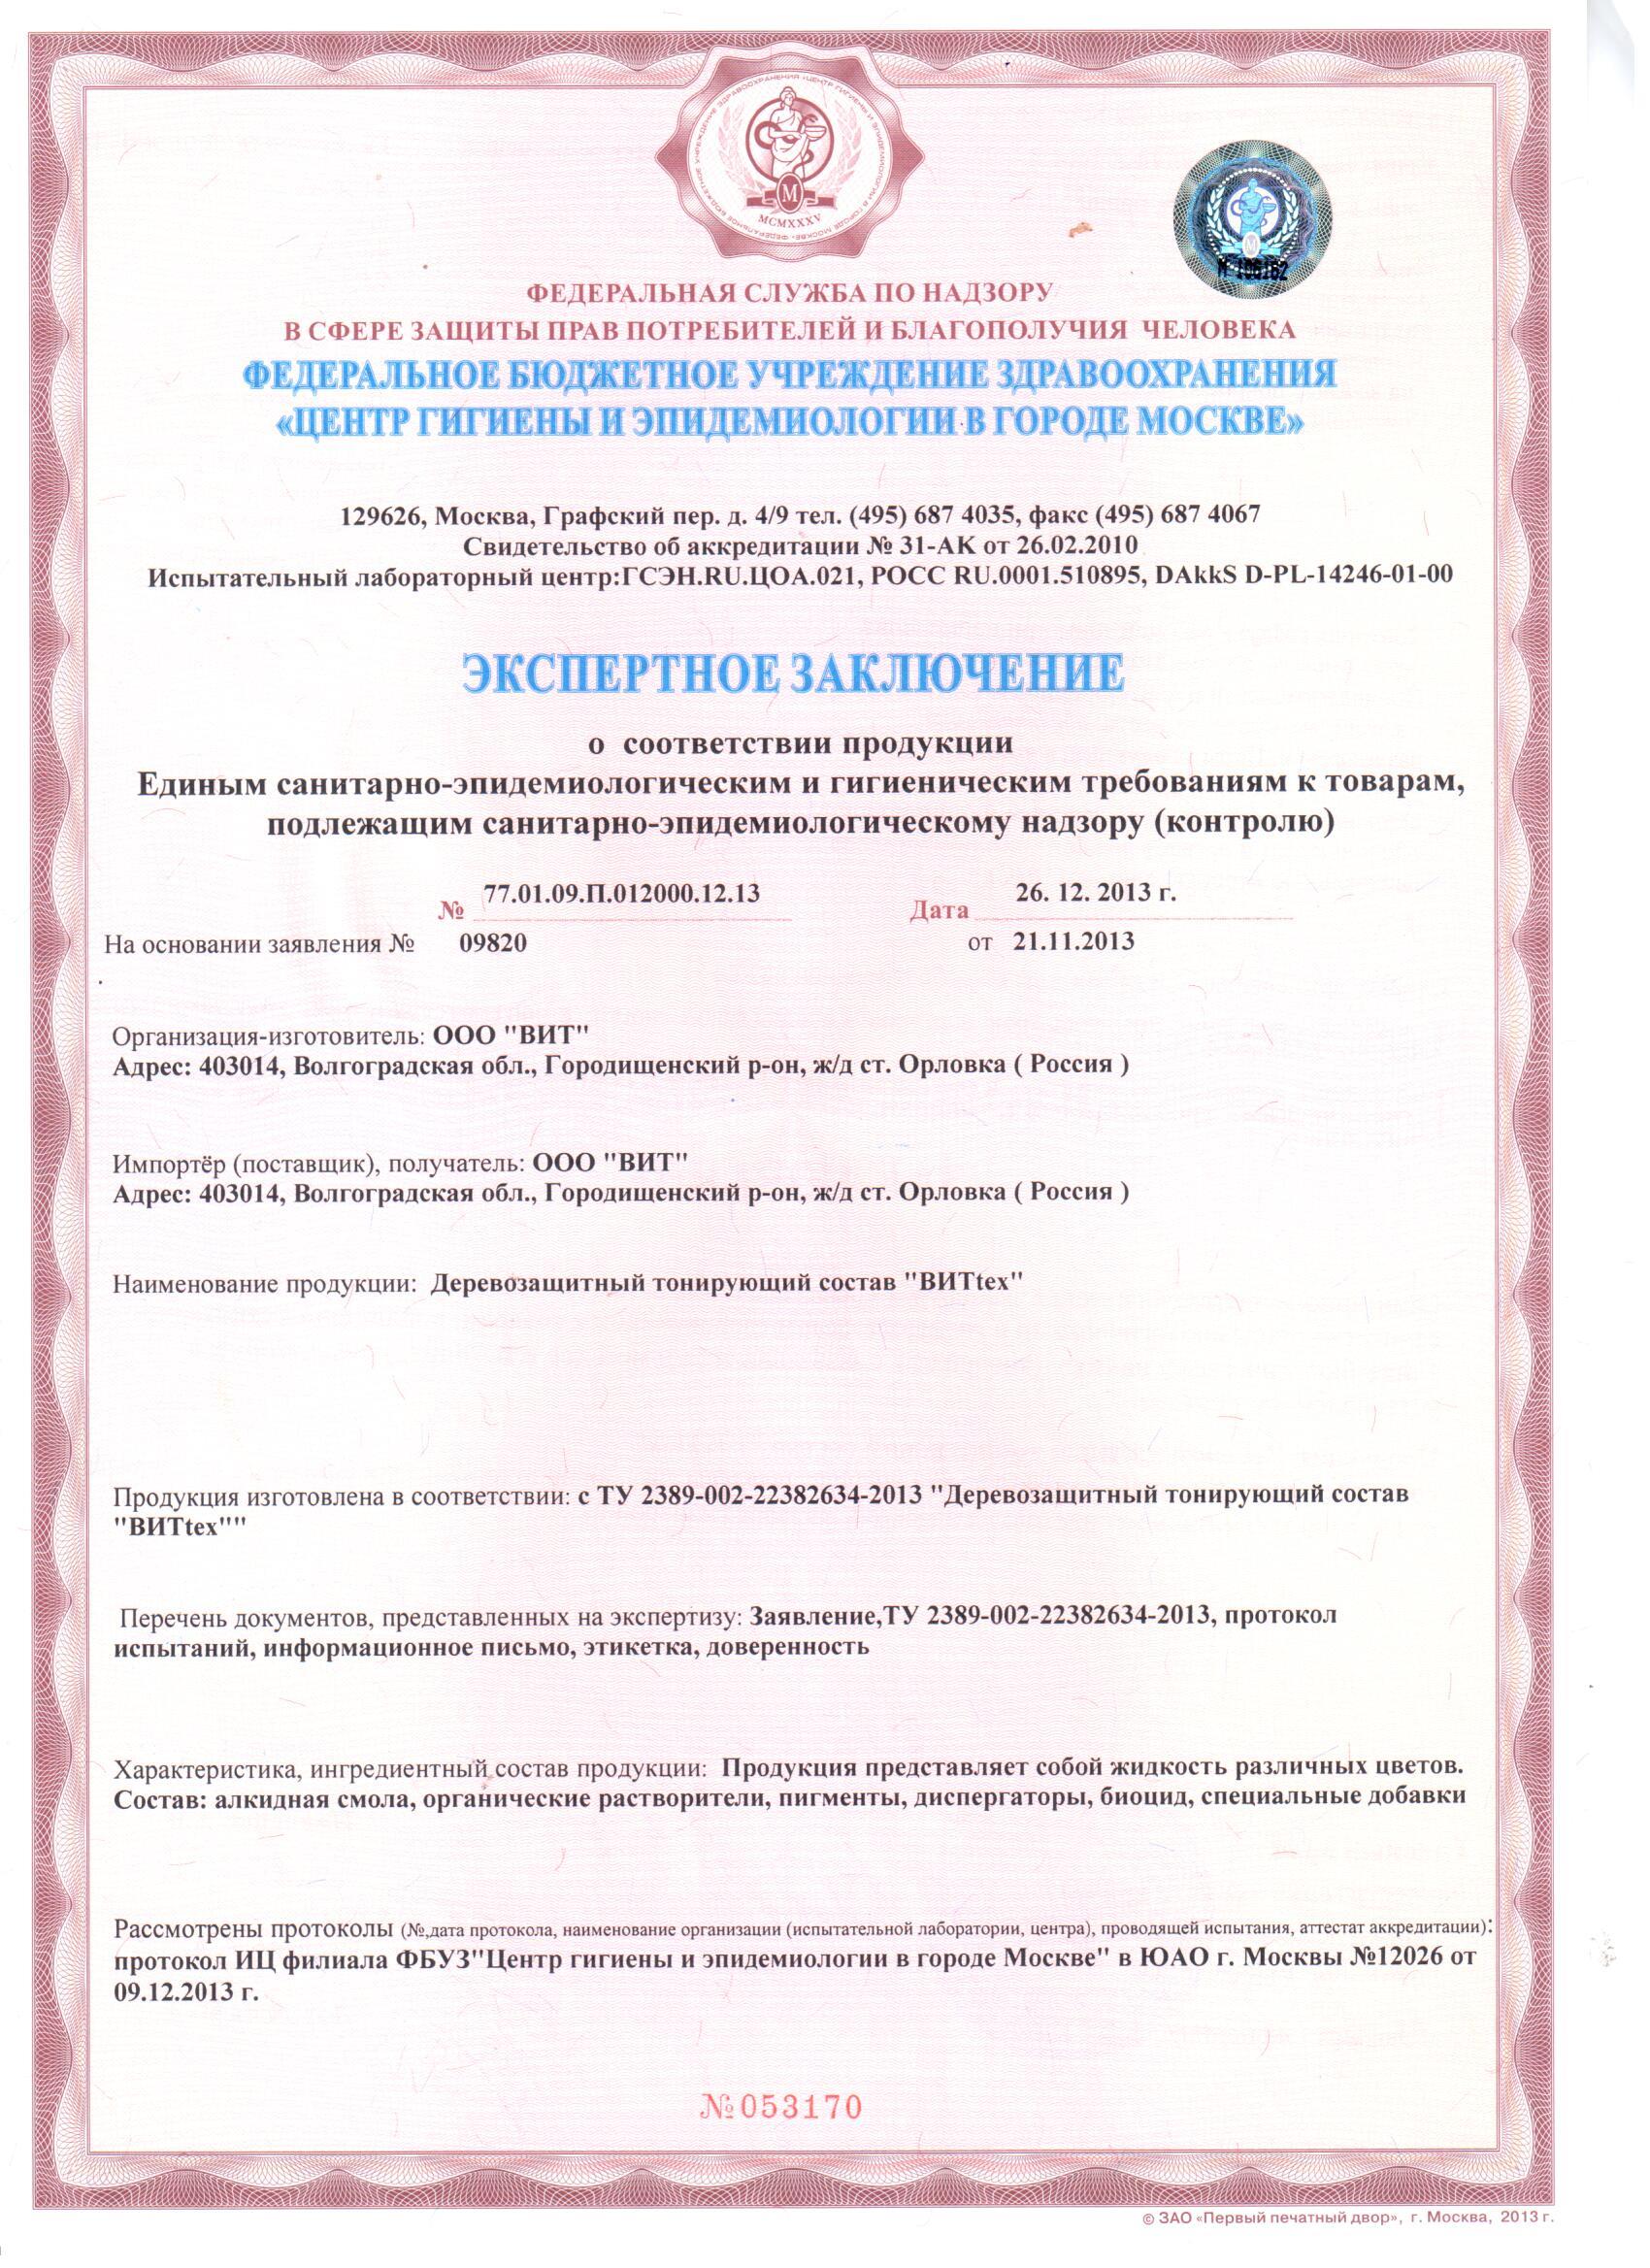 Сертификат На Грунтовку Гф-021 Форму